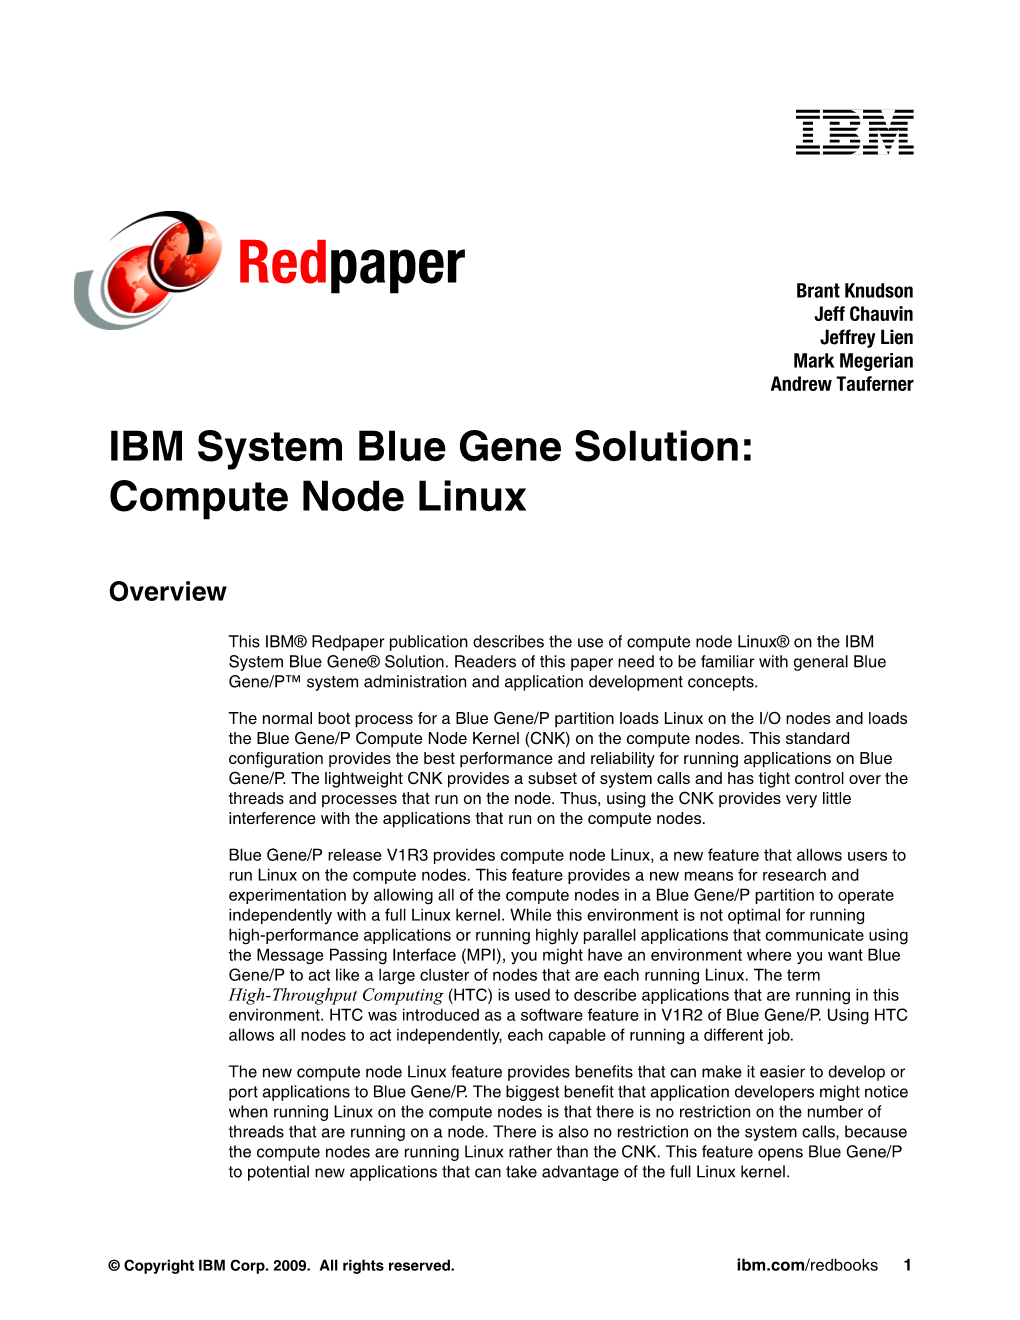 Compute Node Linux